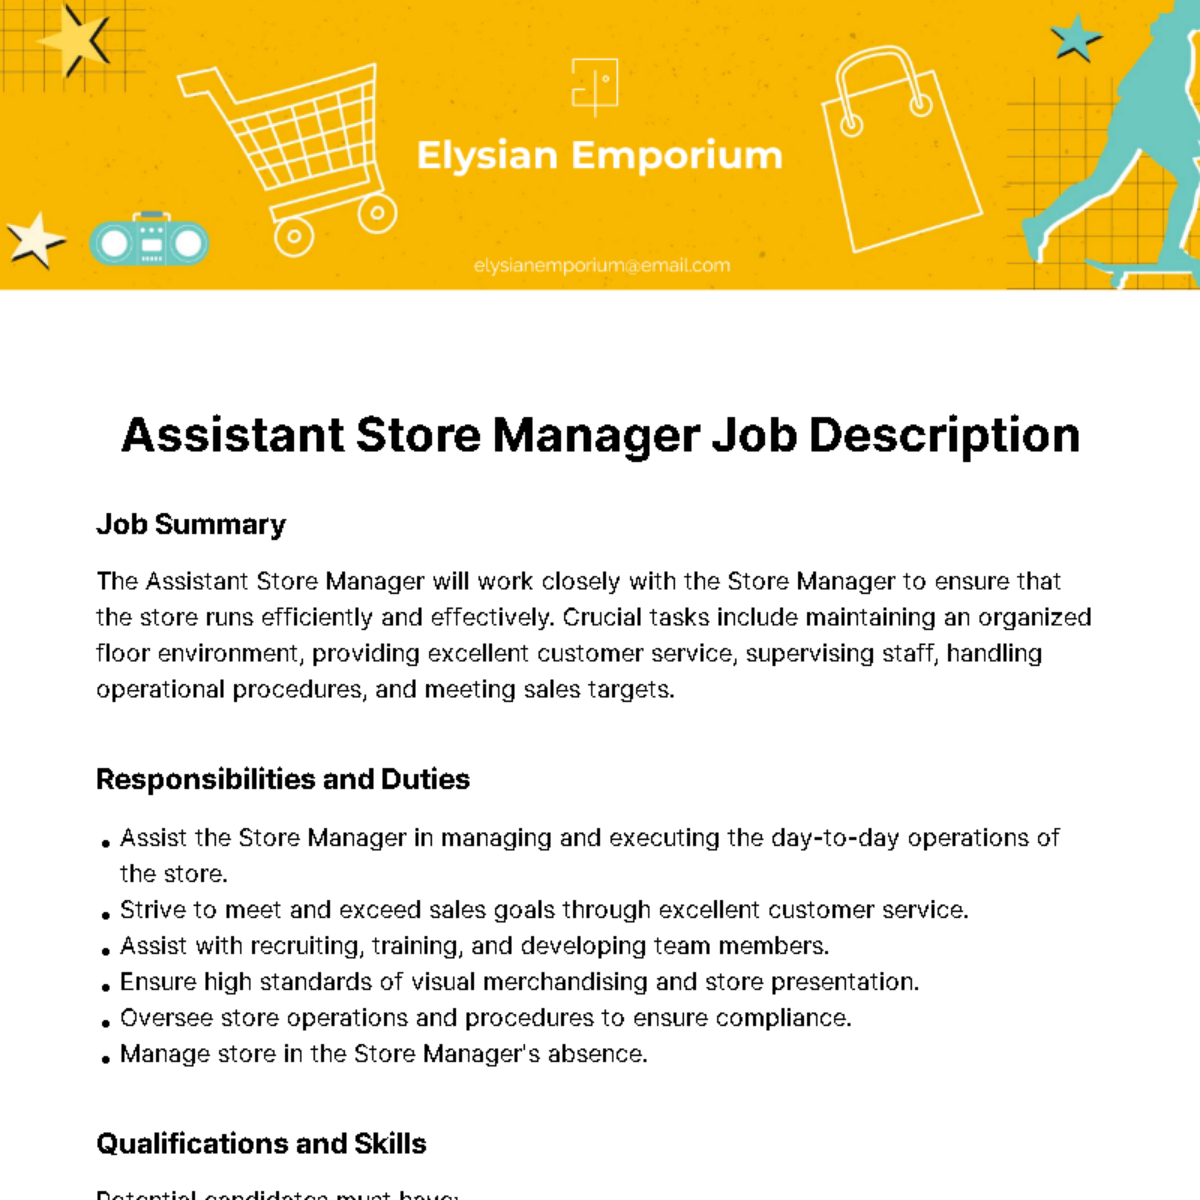 Assistant Store Manager Job Description Template